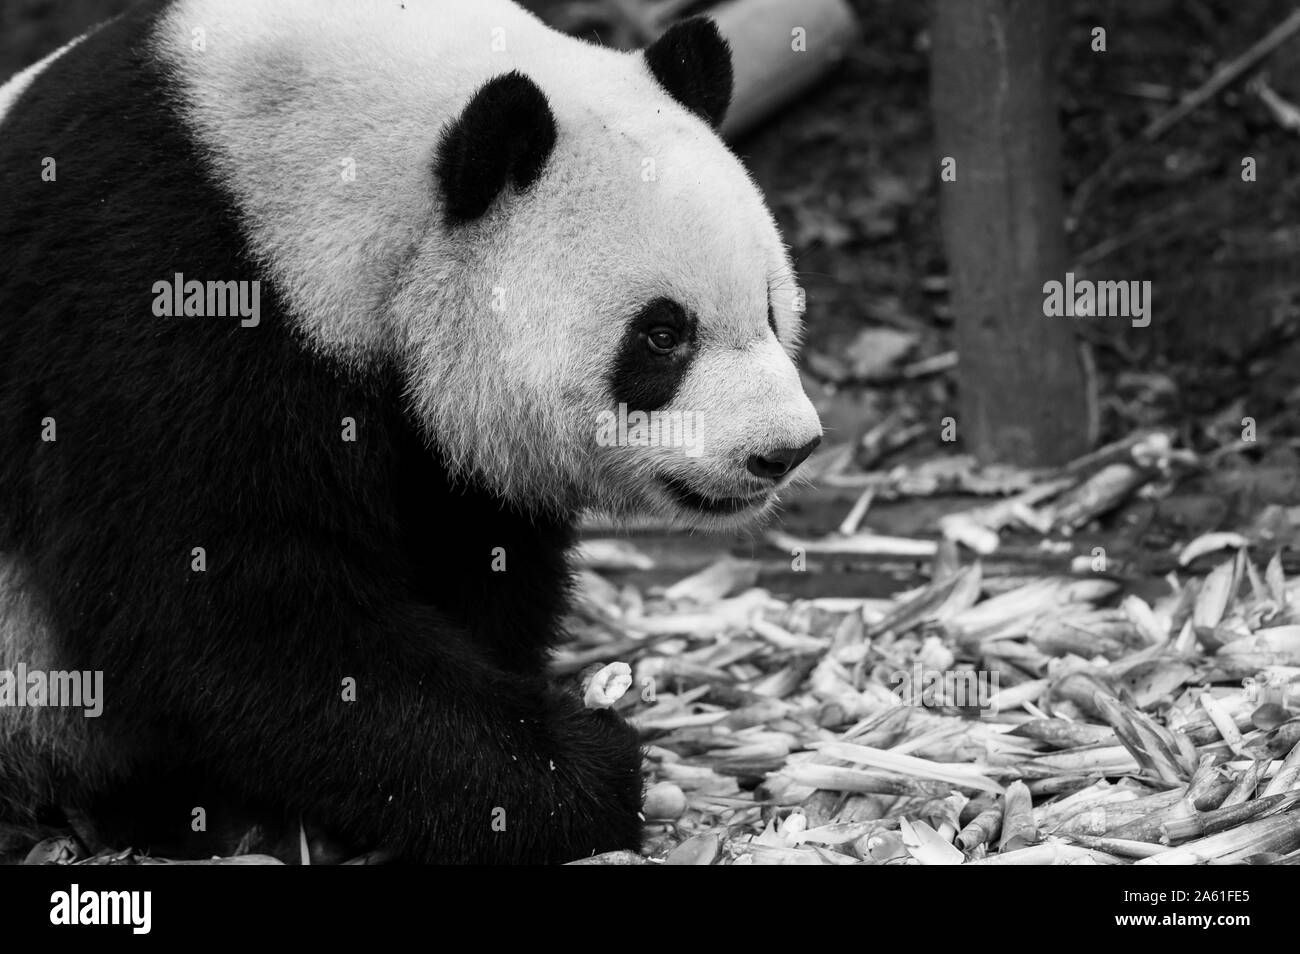 Das Porträt von der Panda. Big Fat lazy Panda isst Bambus in den Wald. Bedrohte Tierwelt. Stockfoto